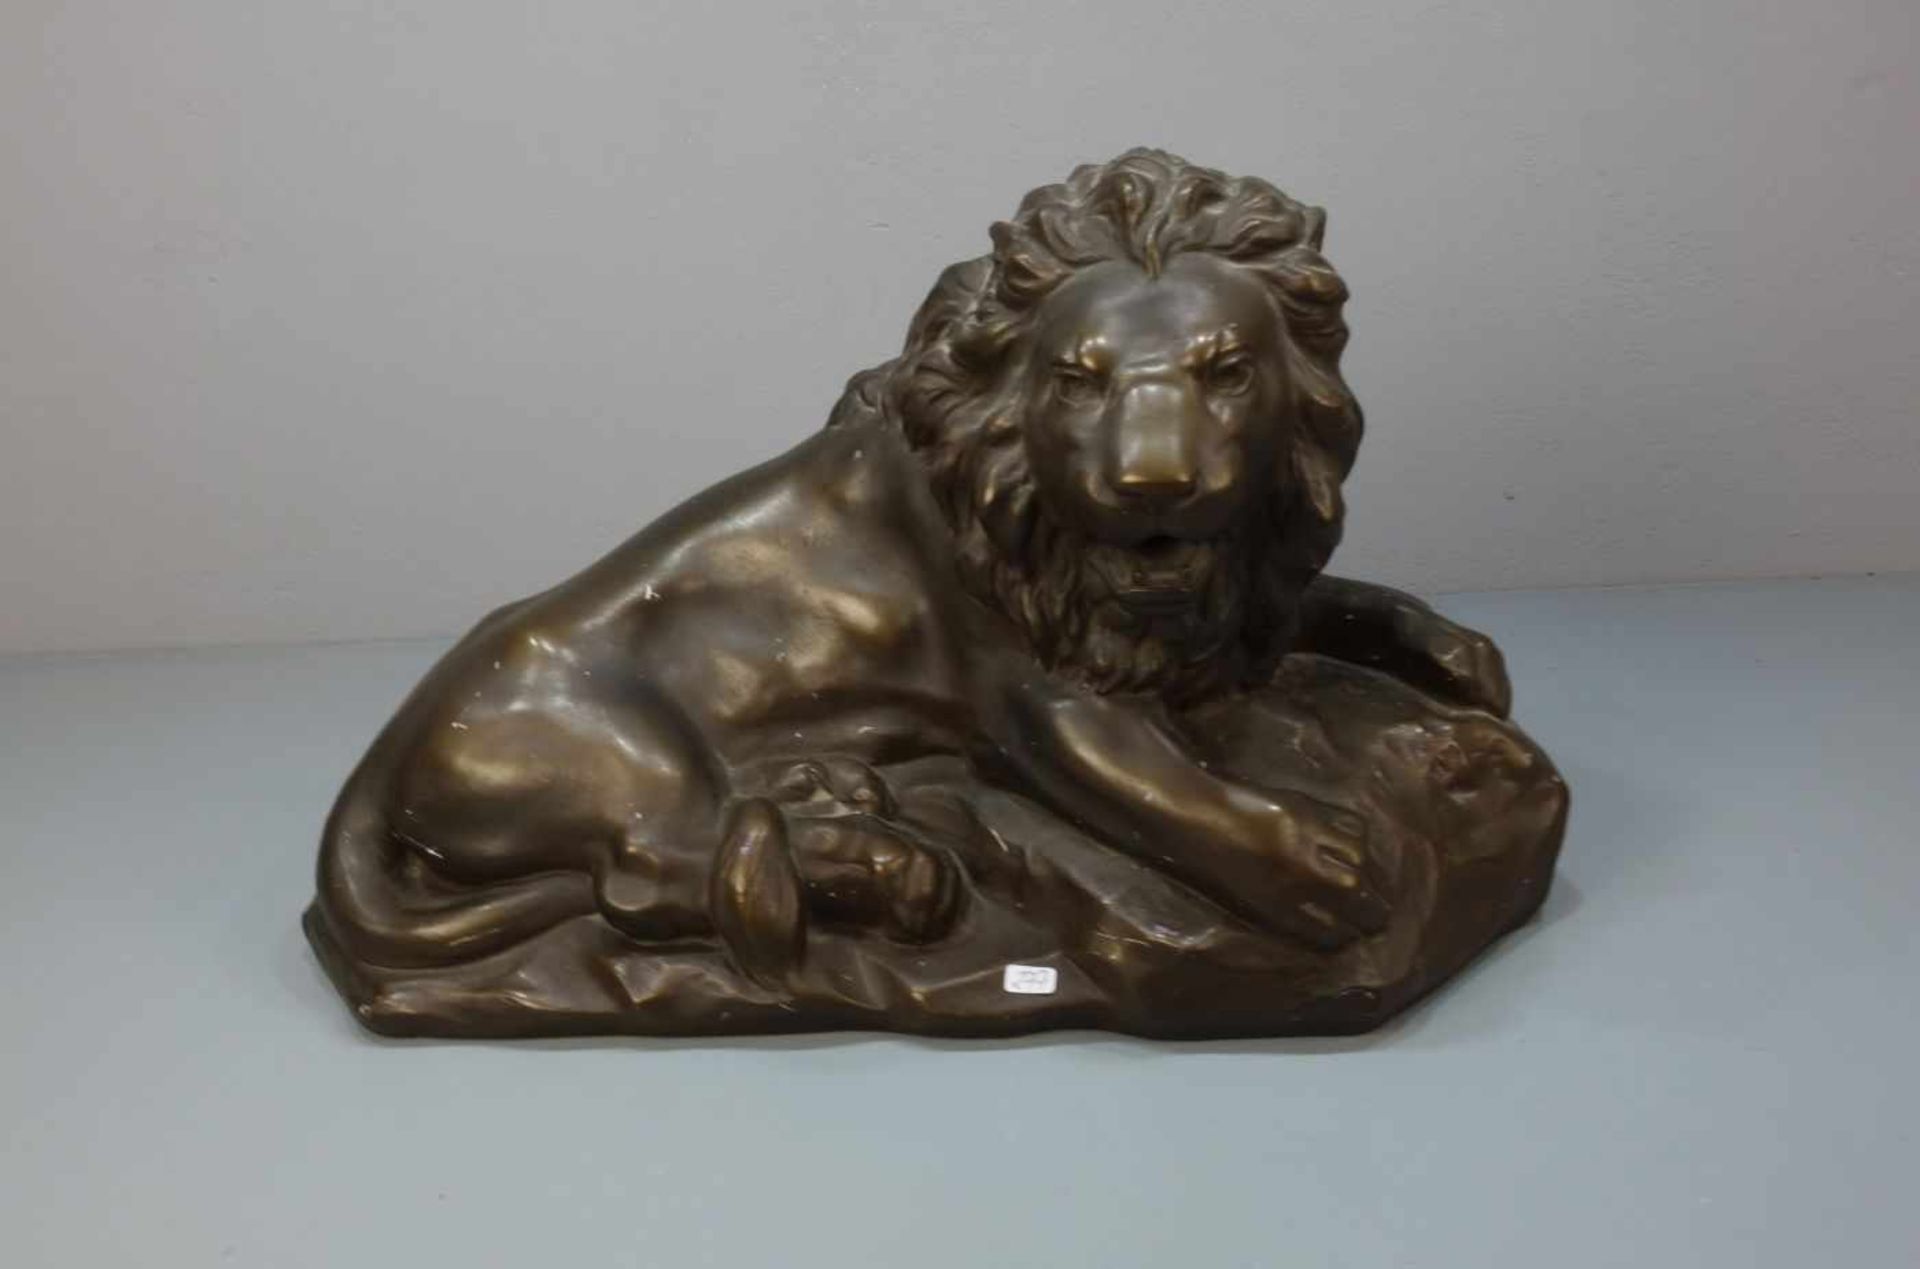 MOECKEL, P. E. (Bildhauer / Animalier des 20. Jh.), Skulptur: "Liegender Löwe", bronzierte Stukko-